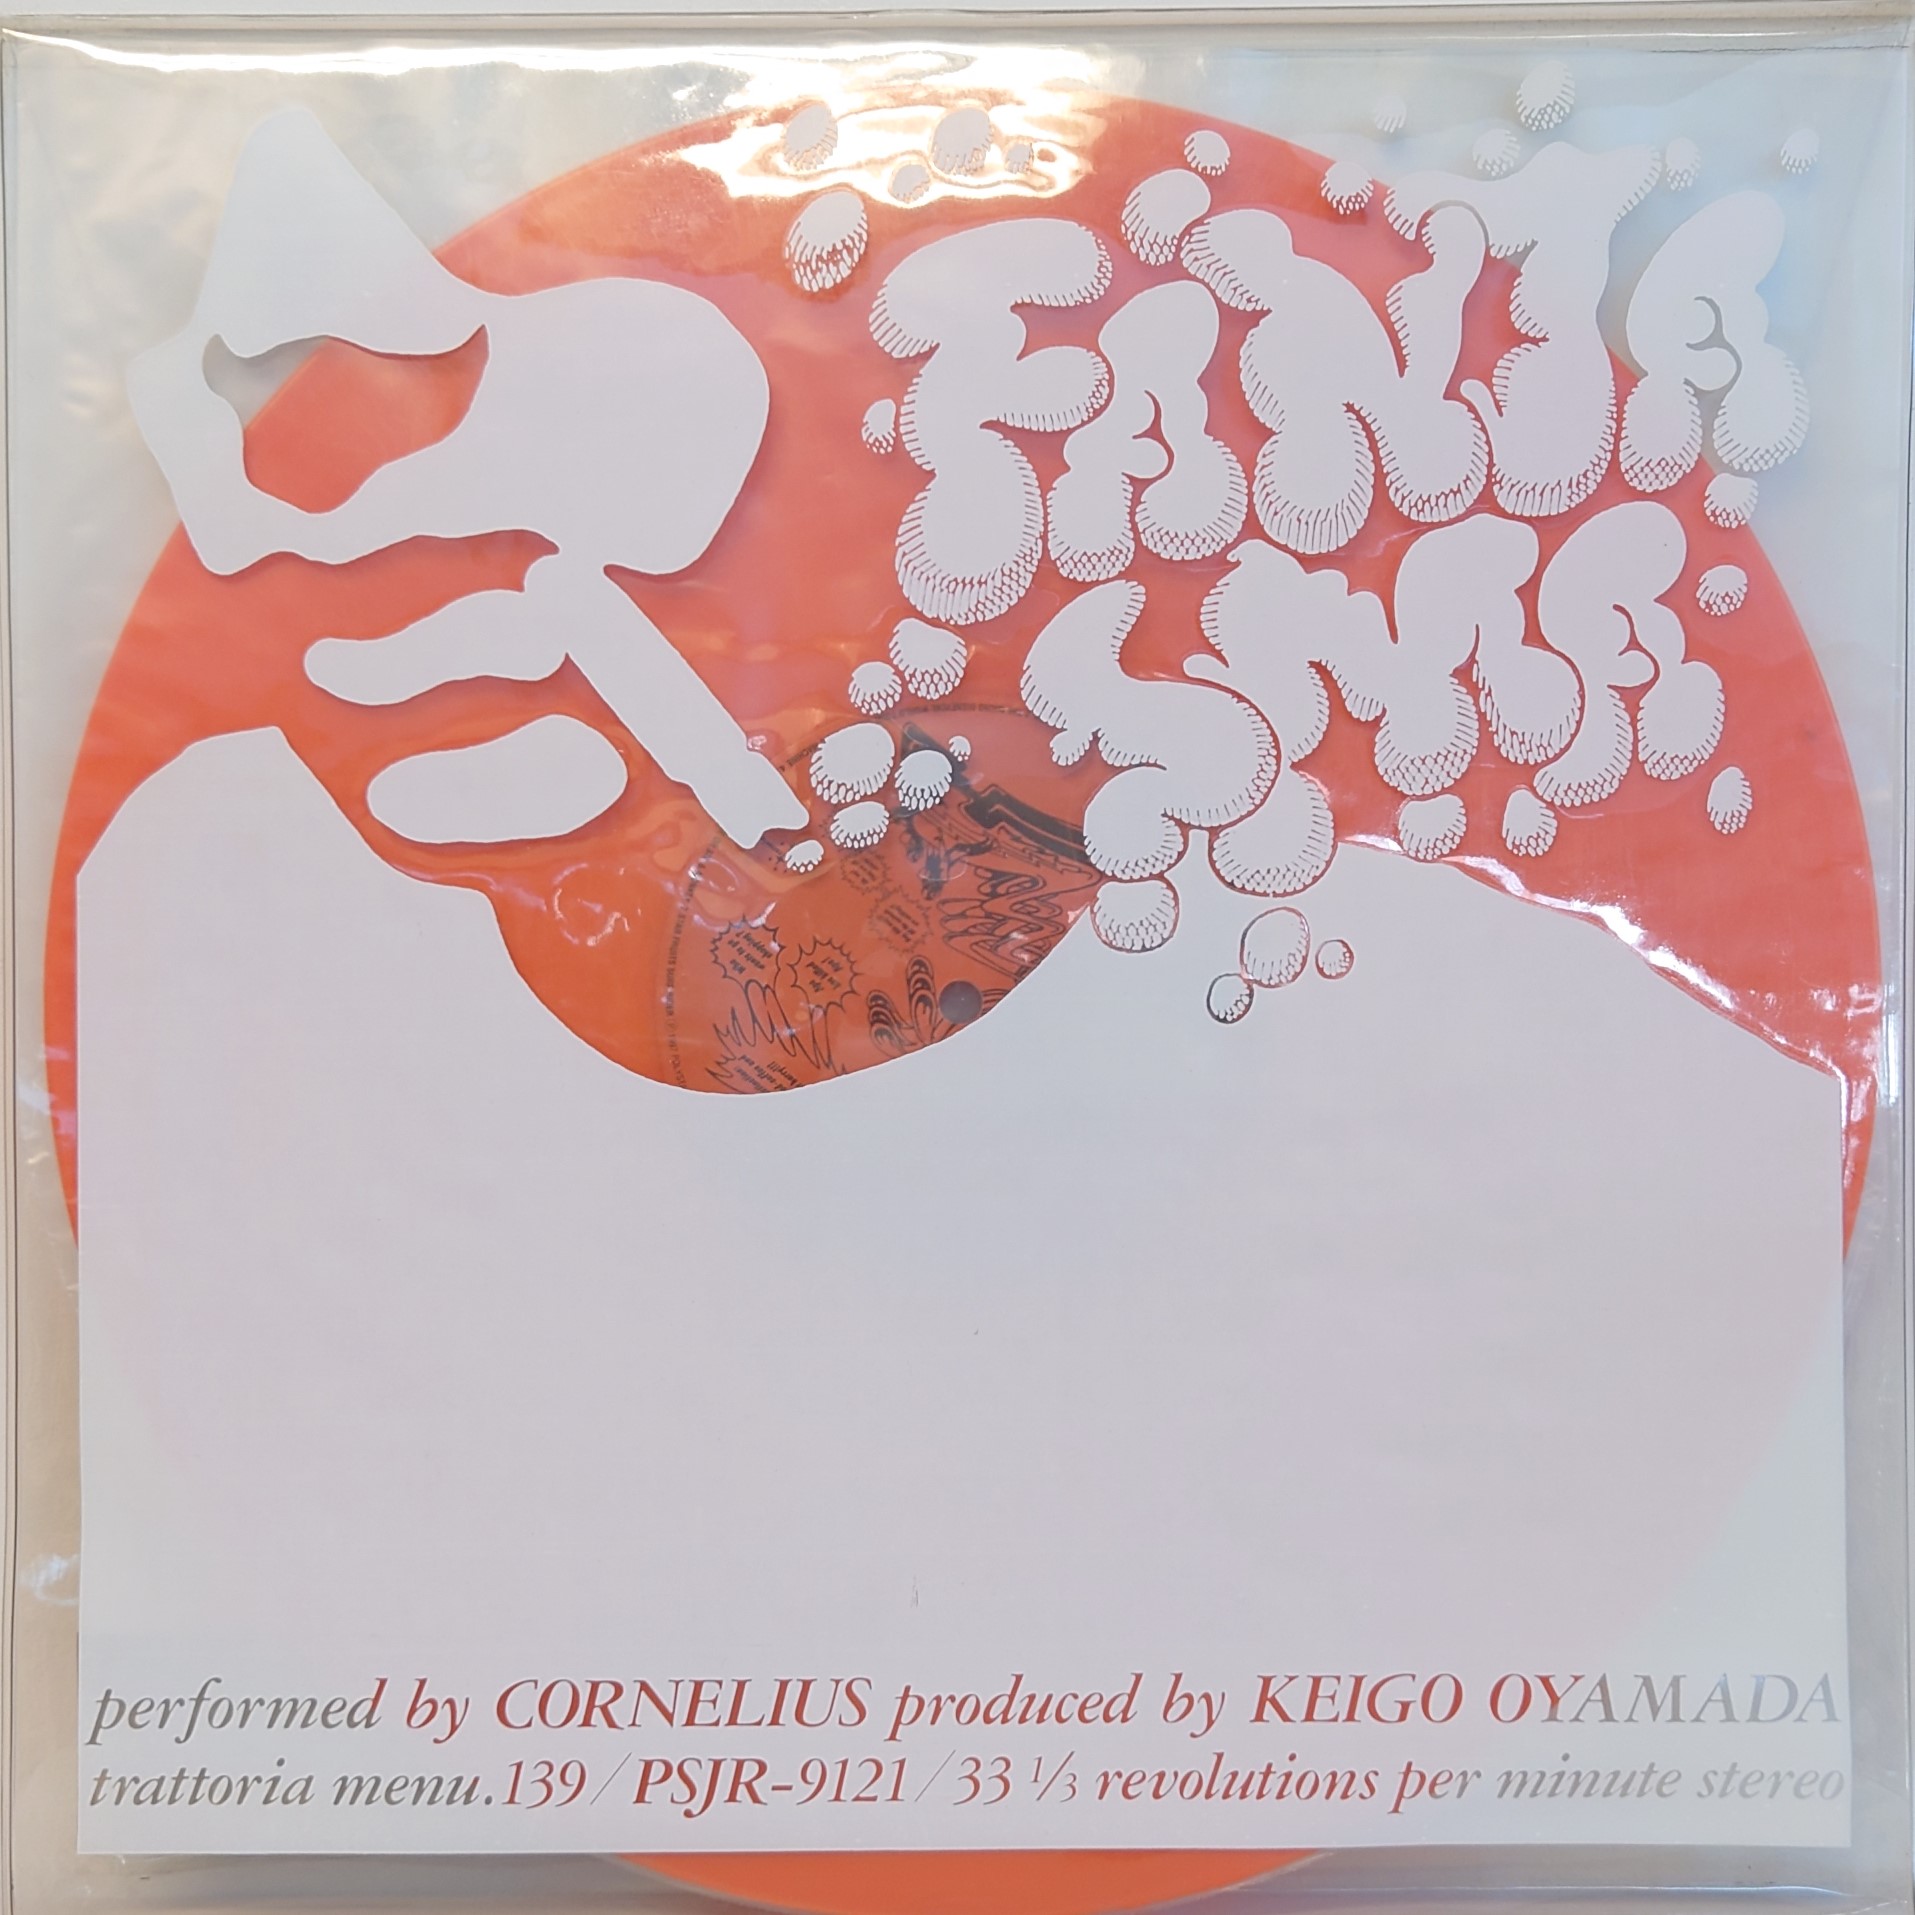 CORNELIUS コーネリアス [POINT] 日本オリジナル盤LP トラットリア